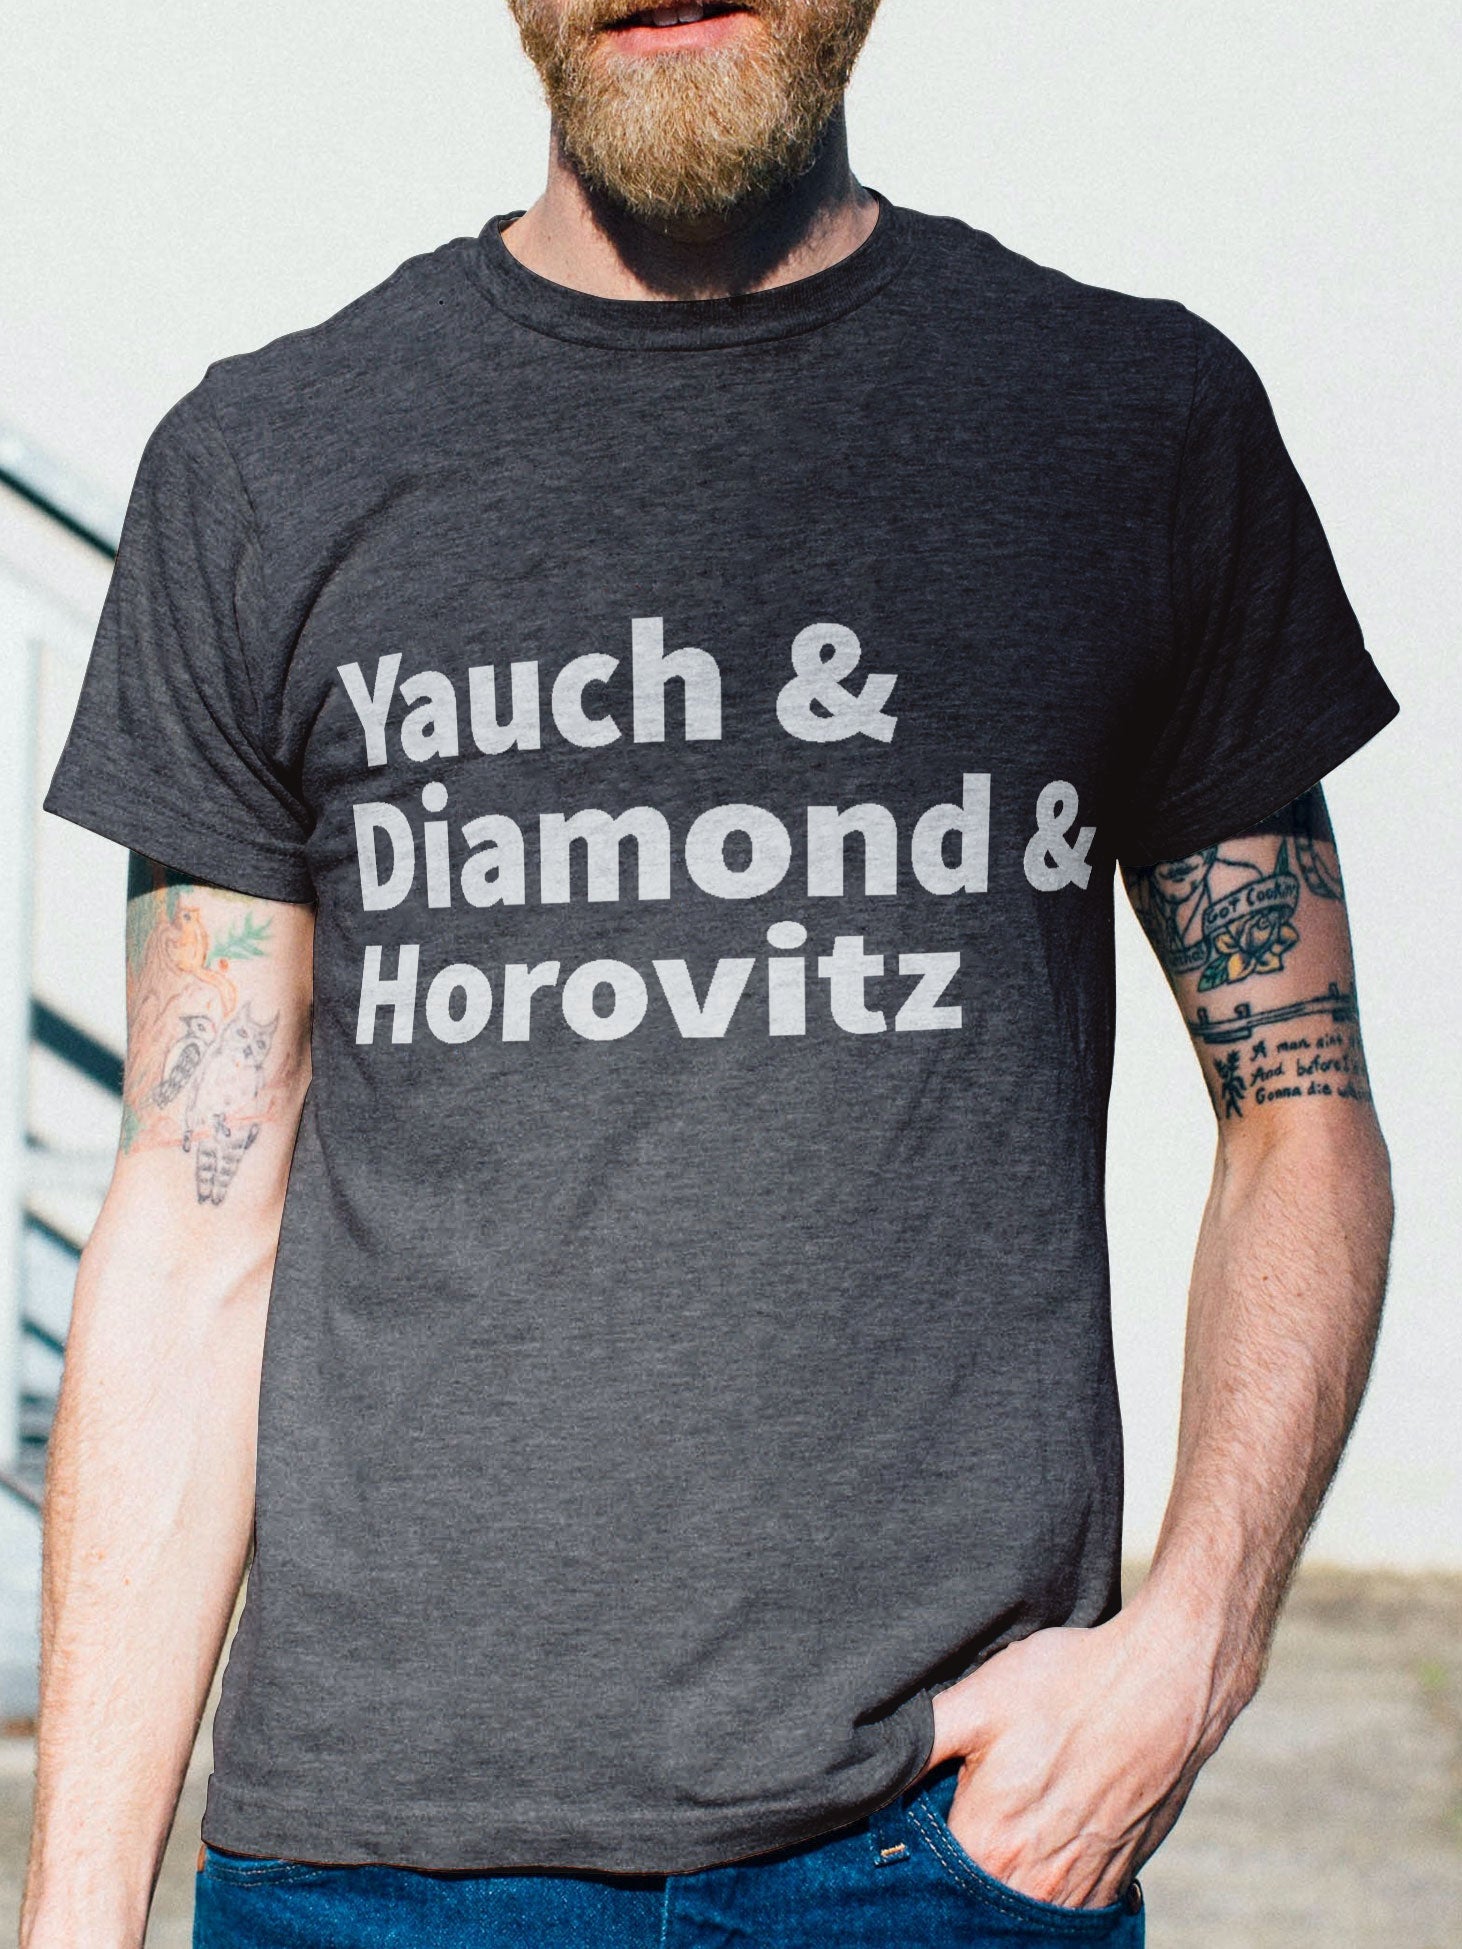 Yauch Diamonds Horovitz Women's T-Shirt Tee